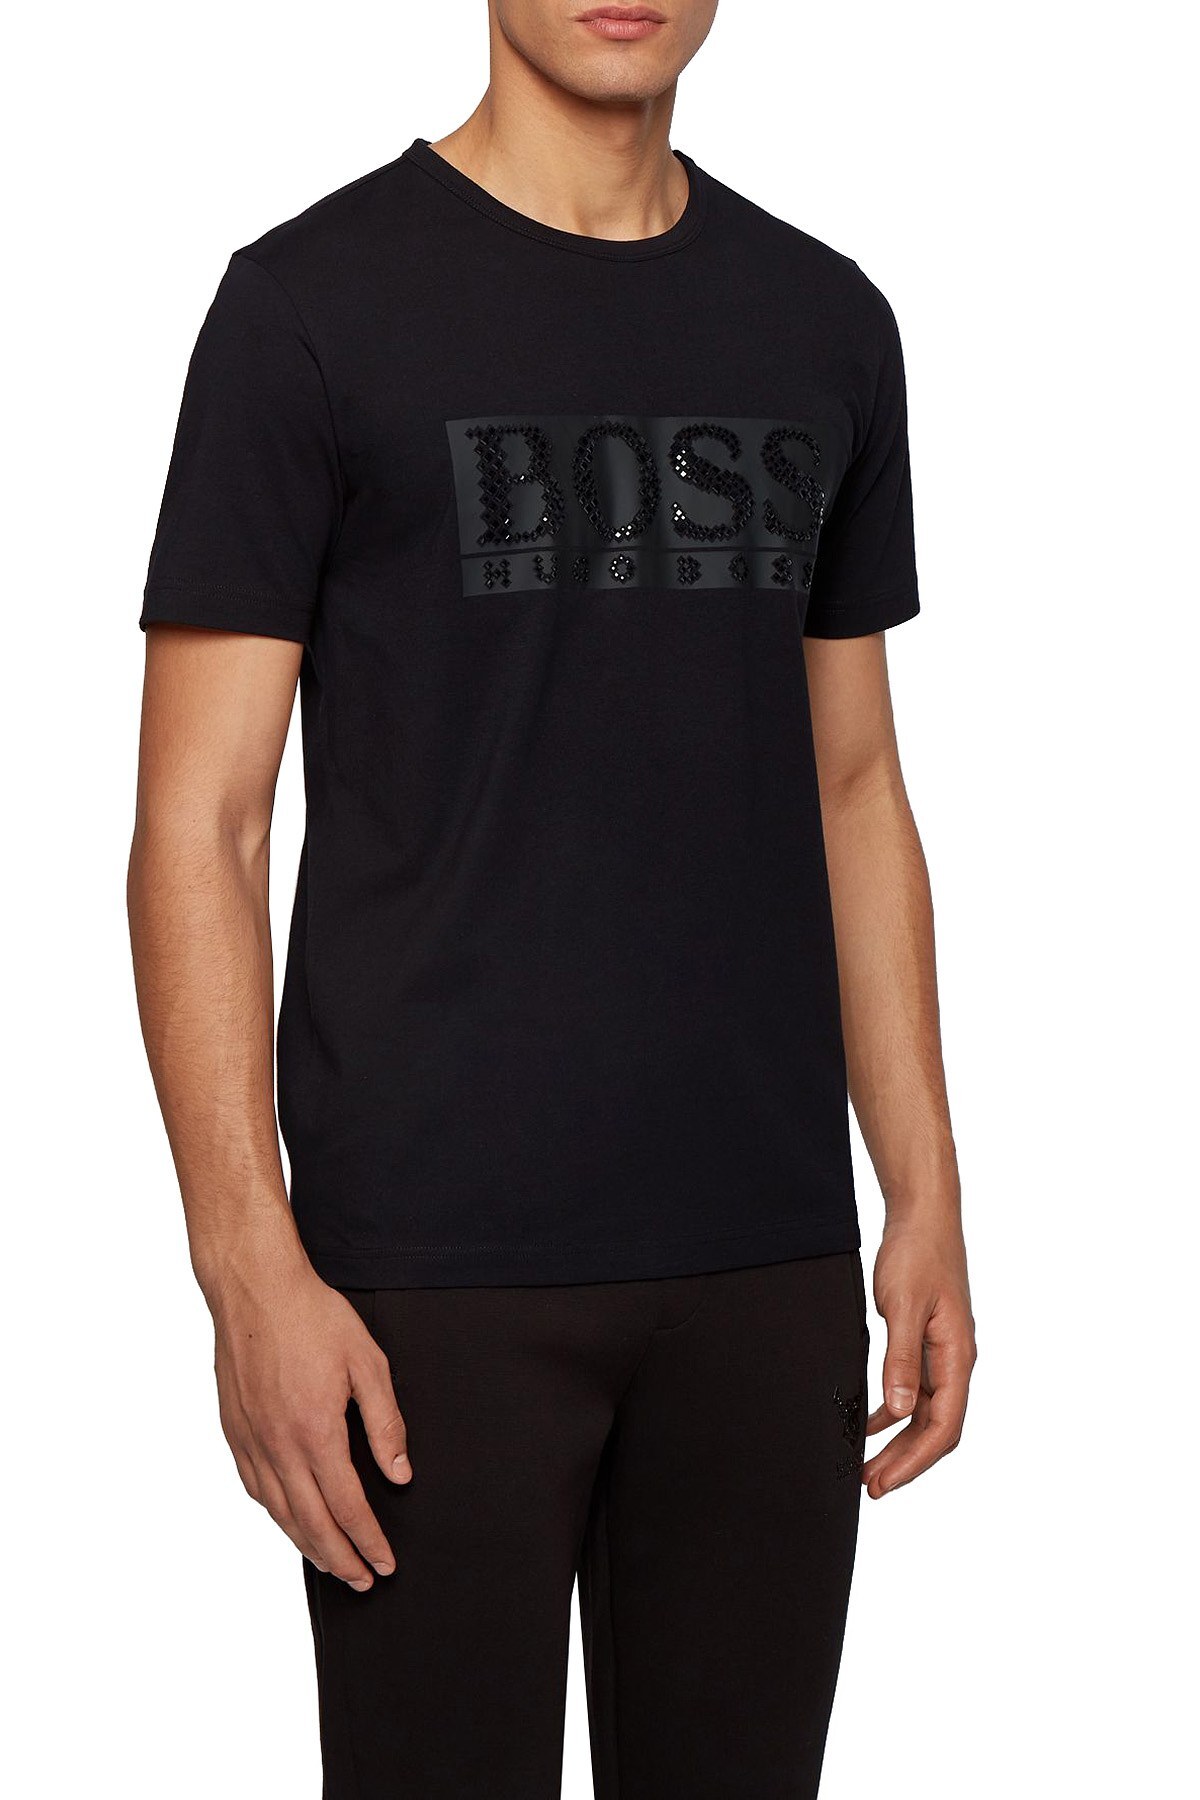 Hugo Boss Taşlı Logo Detaylı Bisiklet Yaka Erkek T Shirt 50443712 001 SİYAH